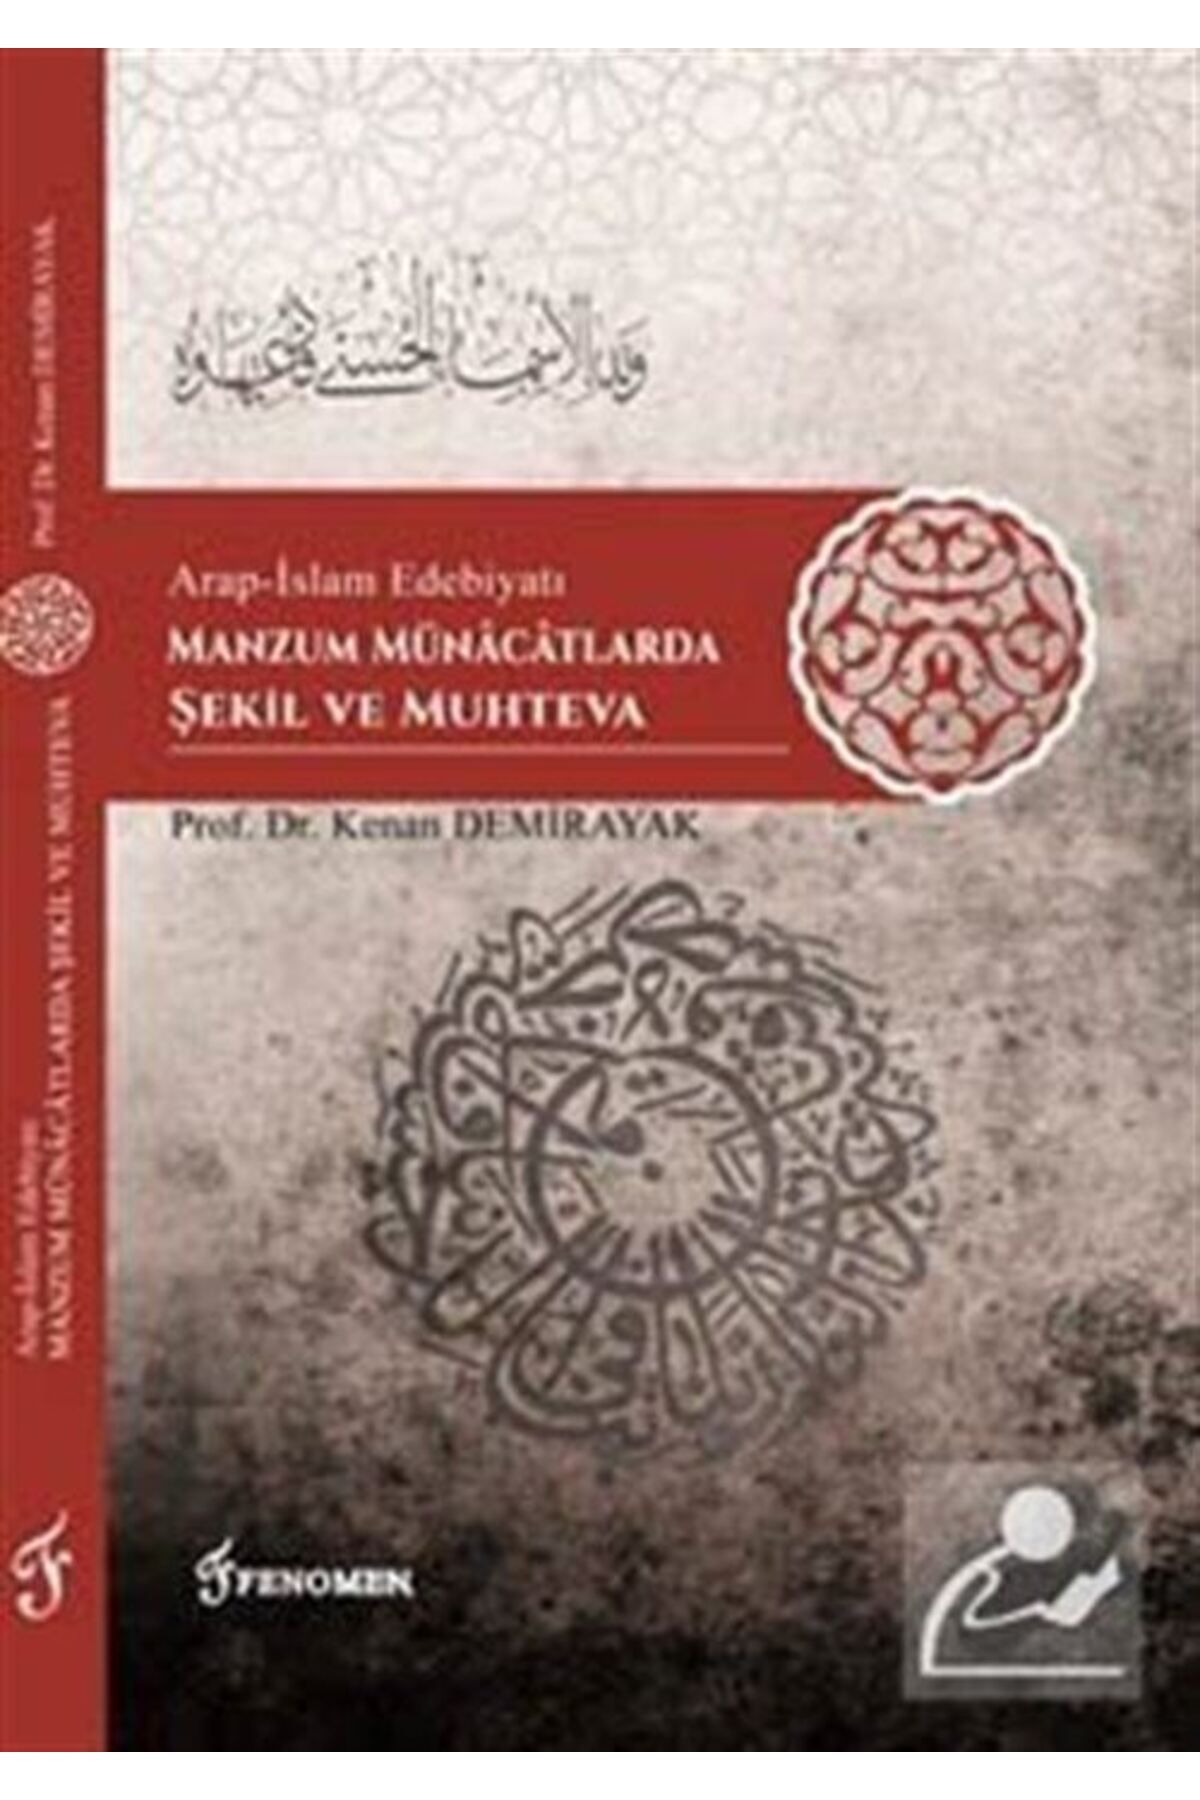 Fenomen Yayıncılık Arap-islam Edebiyatı Manzum Münacatlarda Şekil Ve Muhteva